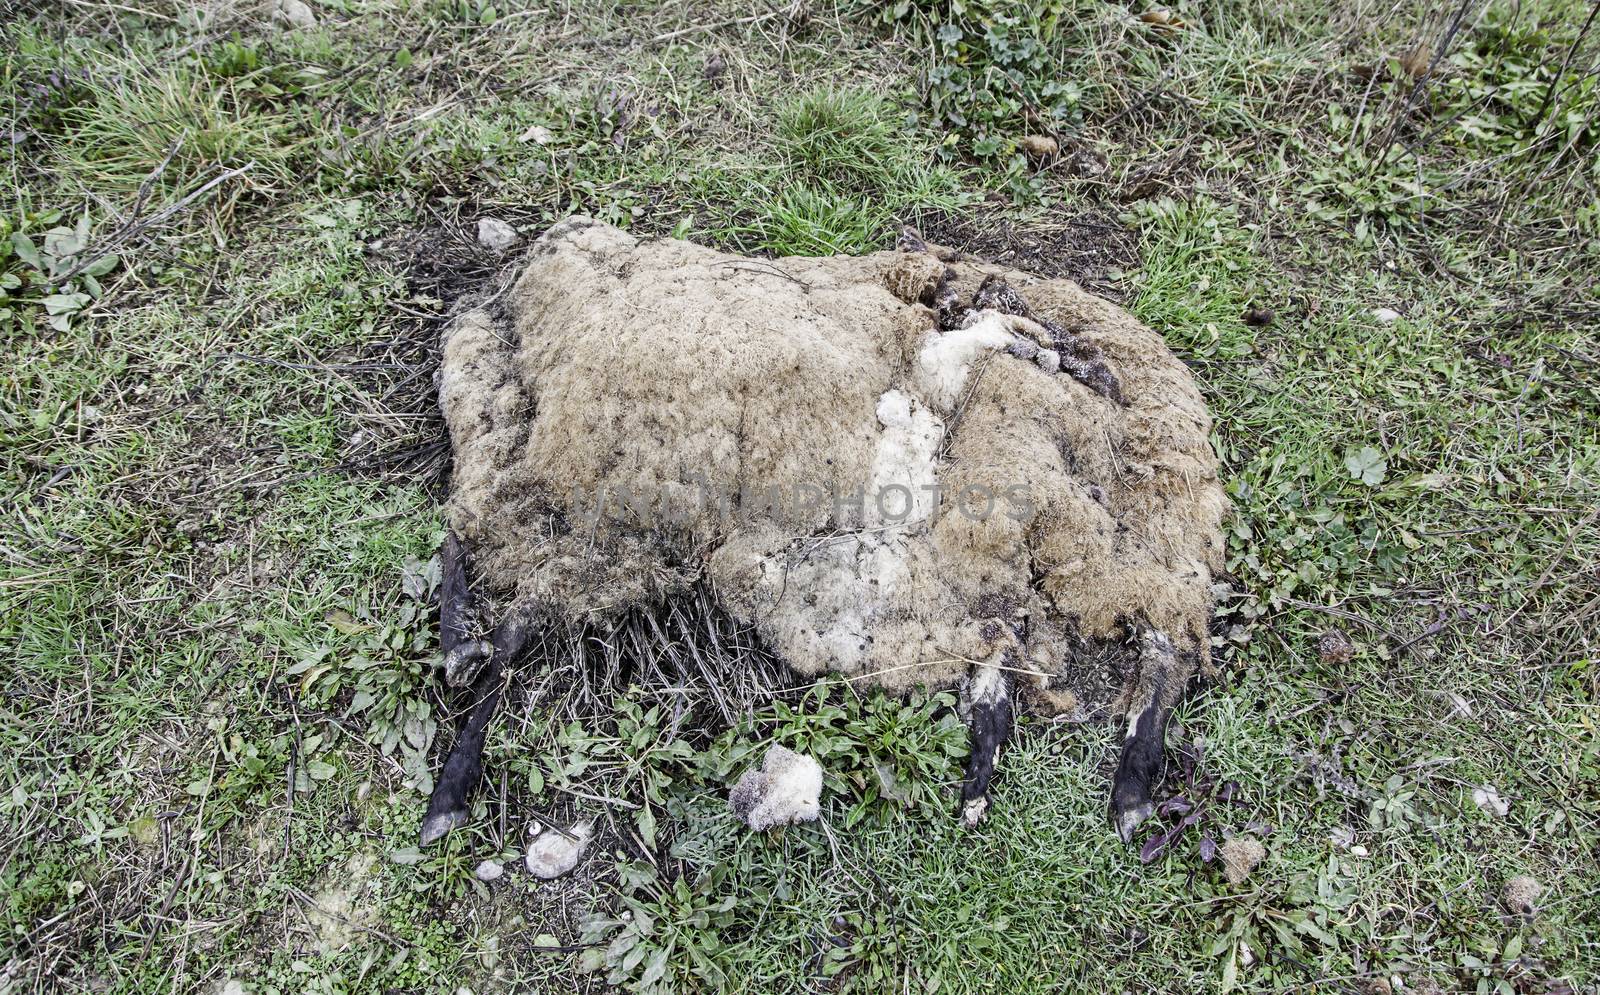 Dead sheep in the field by esebene